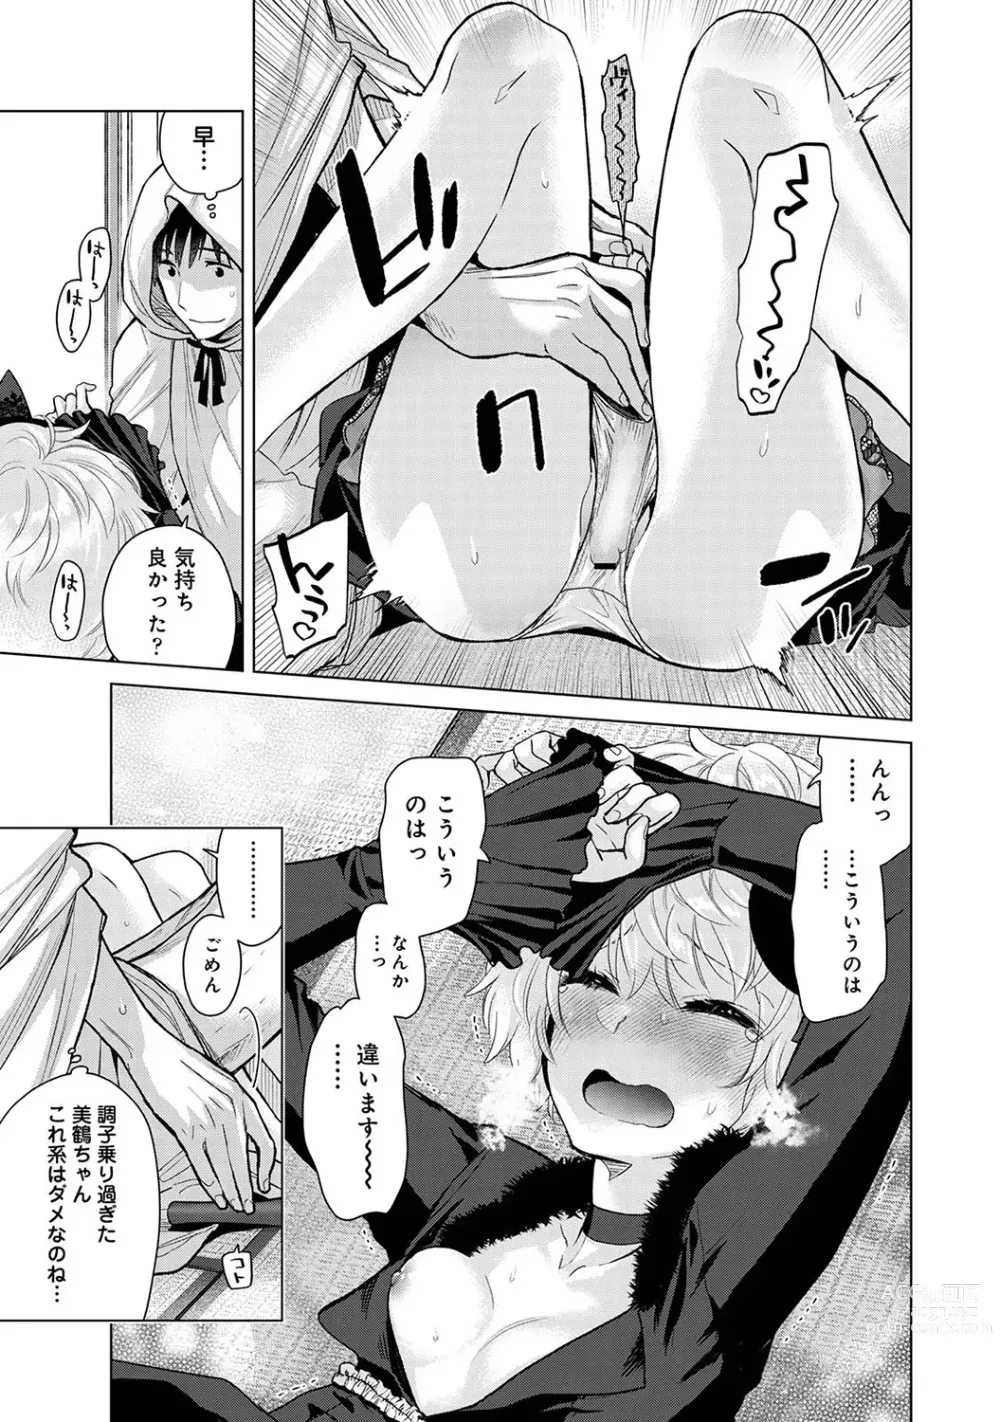 Page 19 of manga COMIC Ananga Ranga Vol. 100